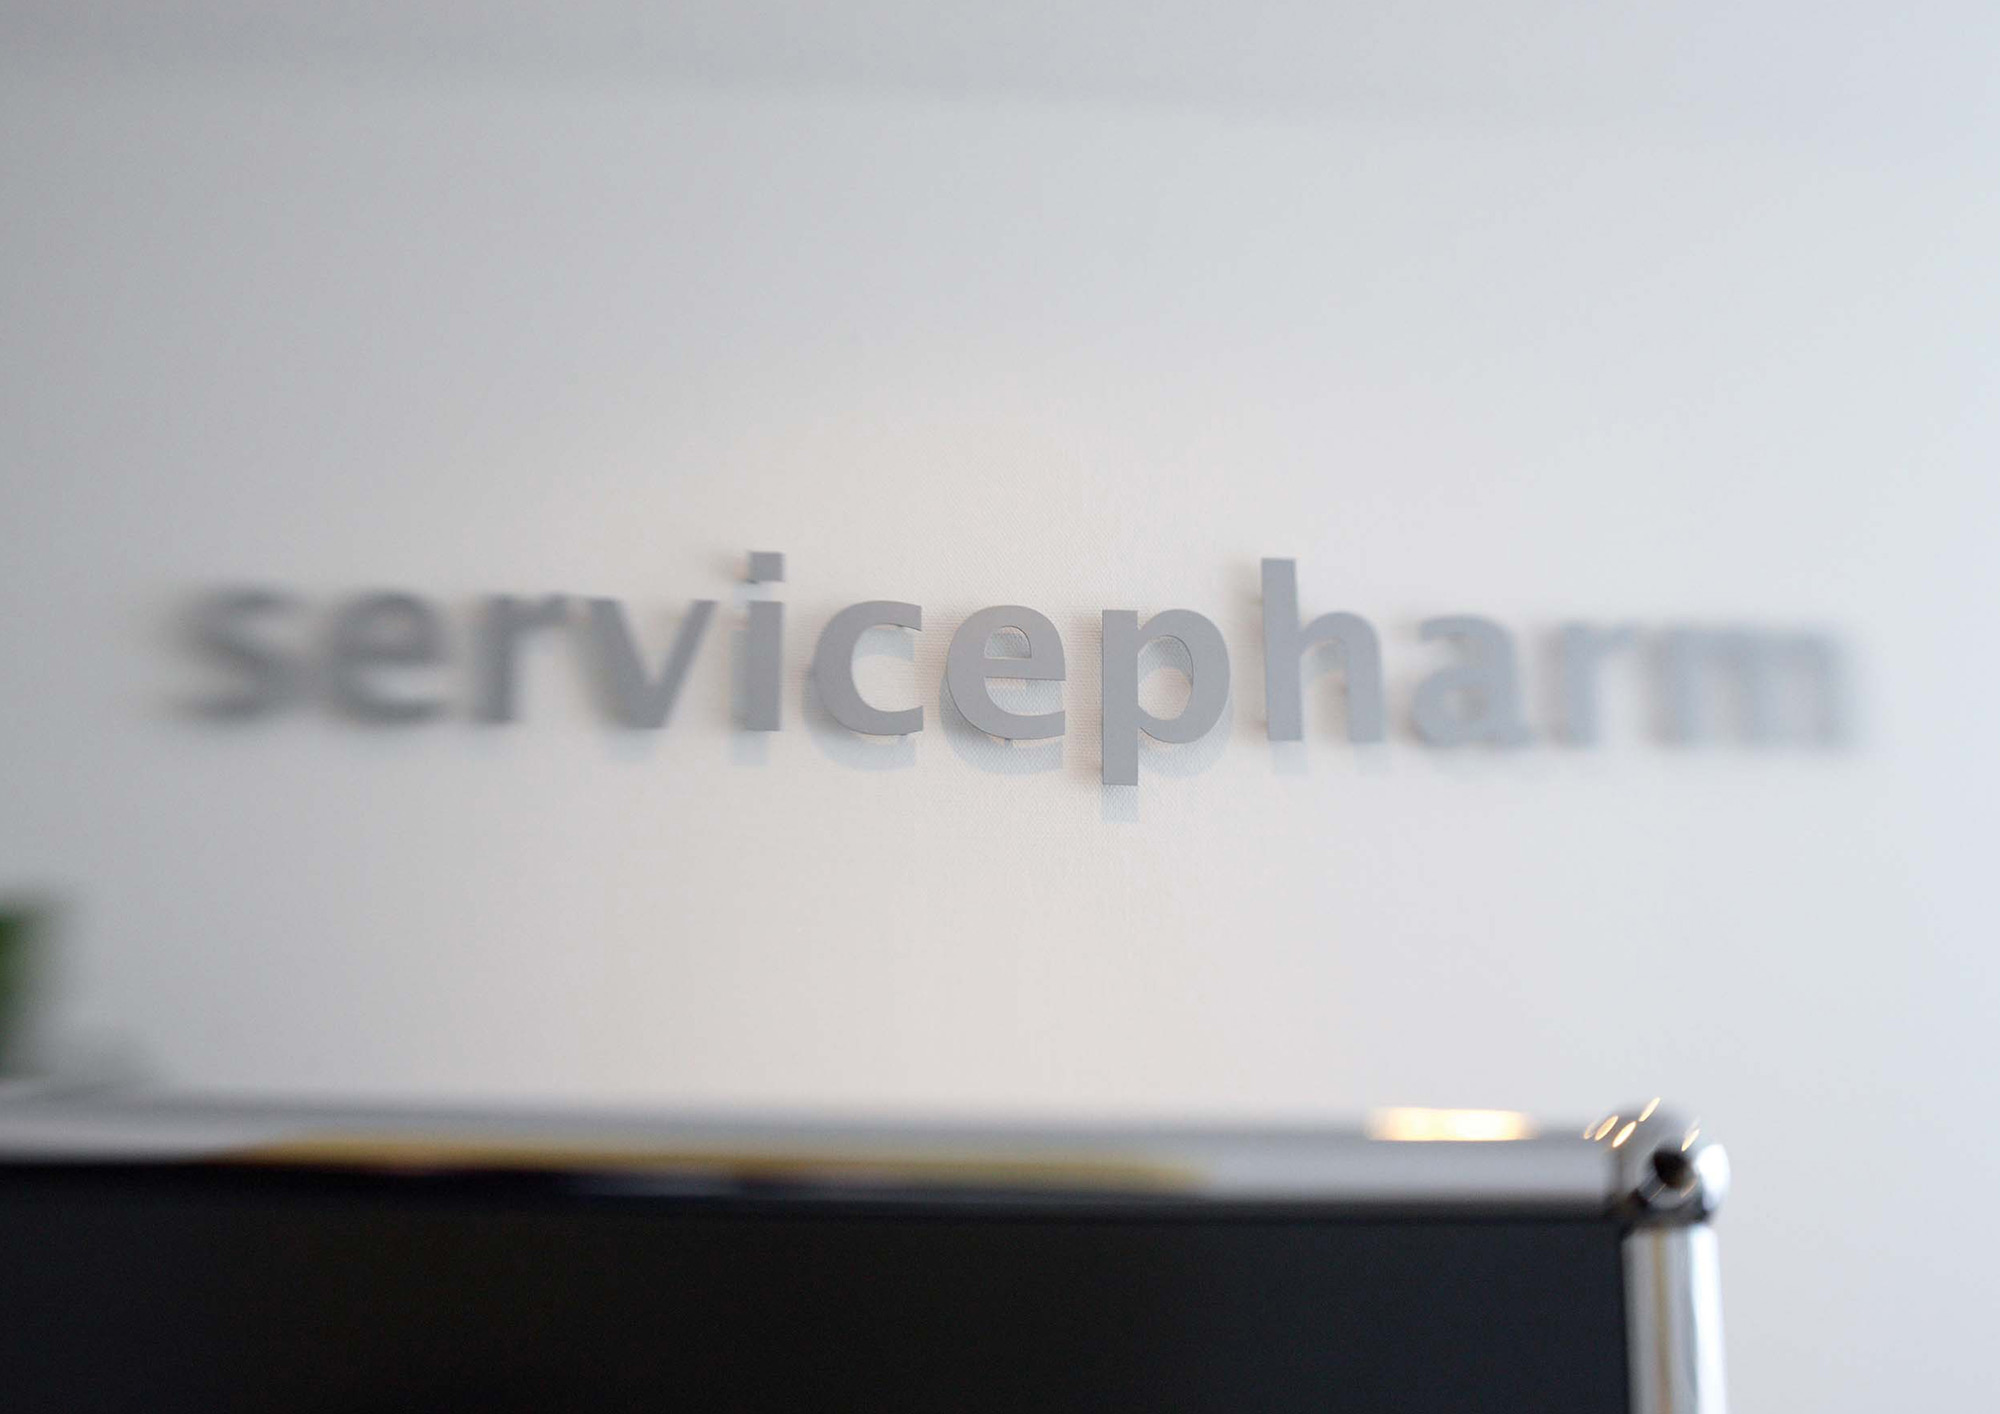 Detailbild zeigt das Servicepharm Lettershop Logo im Besprechungsraum